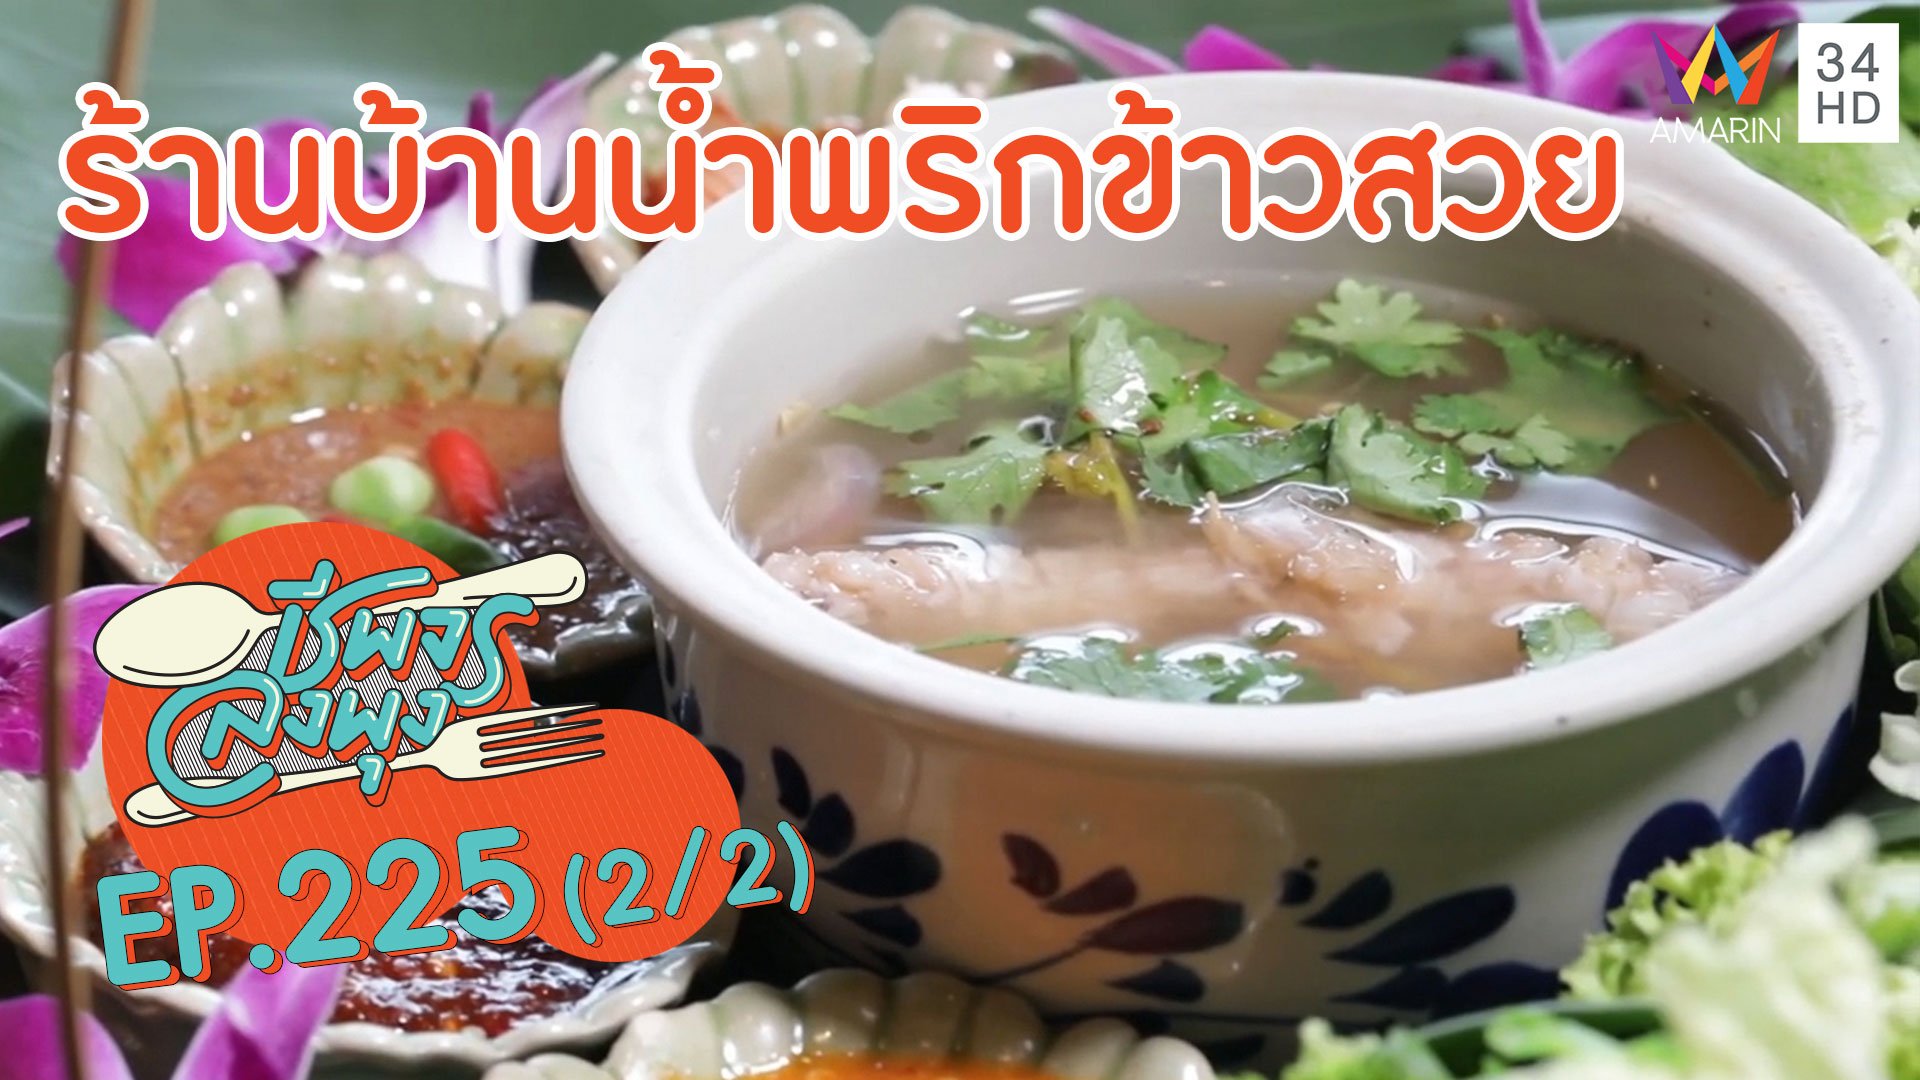 ศูนย์รวมจานเด็ดเมืองจันทบุรี @ร้านบ้านน้ำพริกข้าวสวย | ชีพจรลงพุง | 2 ส.ค. 63 (2/2) | AMARIN TVHD34